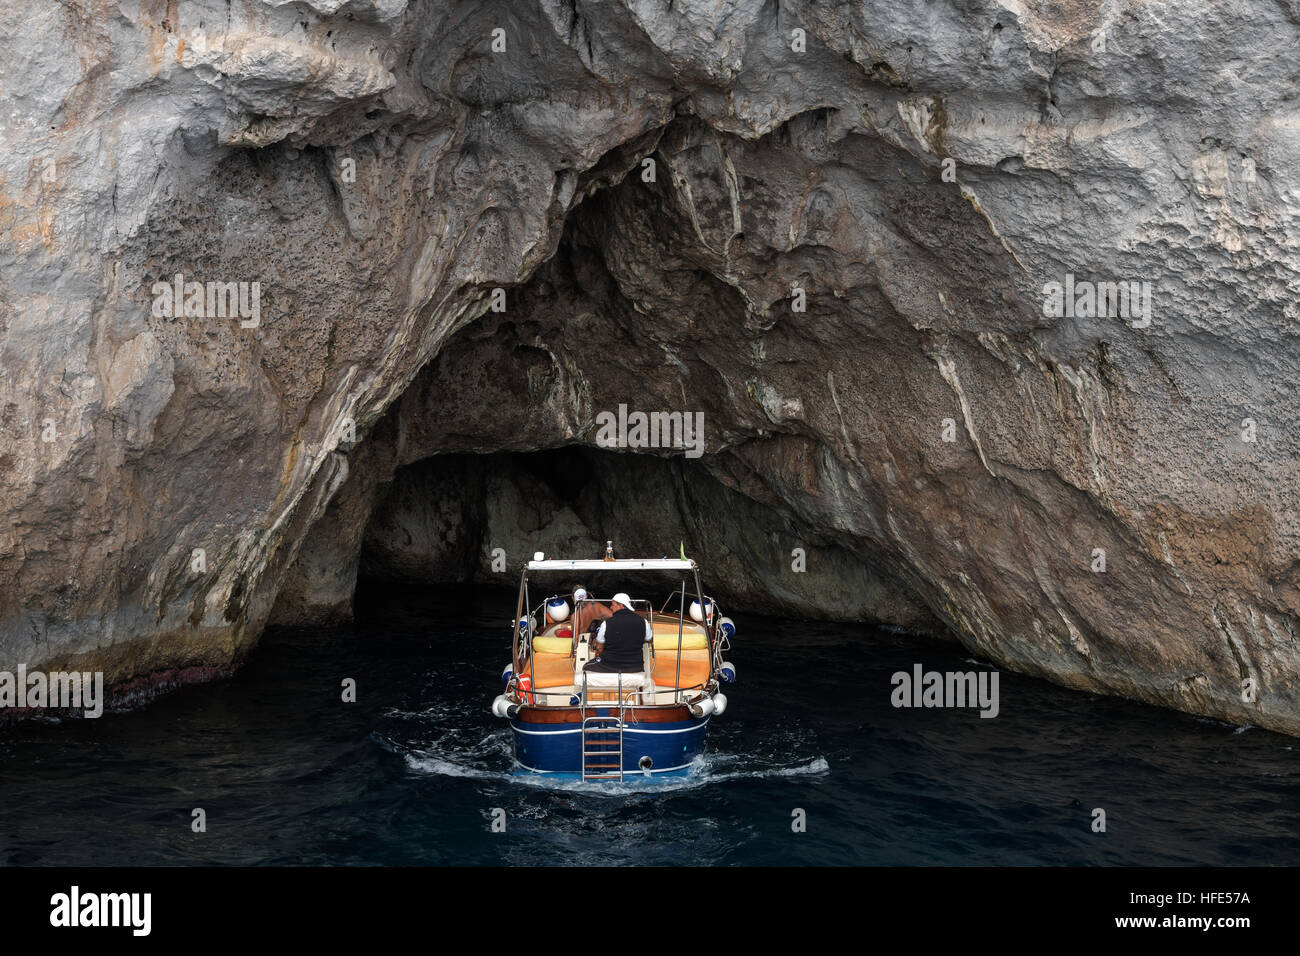 Célèbre place la Grotte Bleue - une grotte marine sur la côte de l'île de Capri, dans la baie de Naples, Italie, Europe Banque D'Images